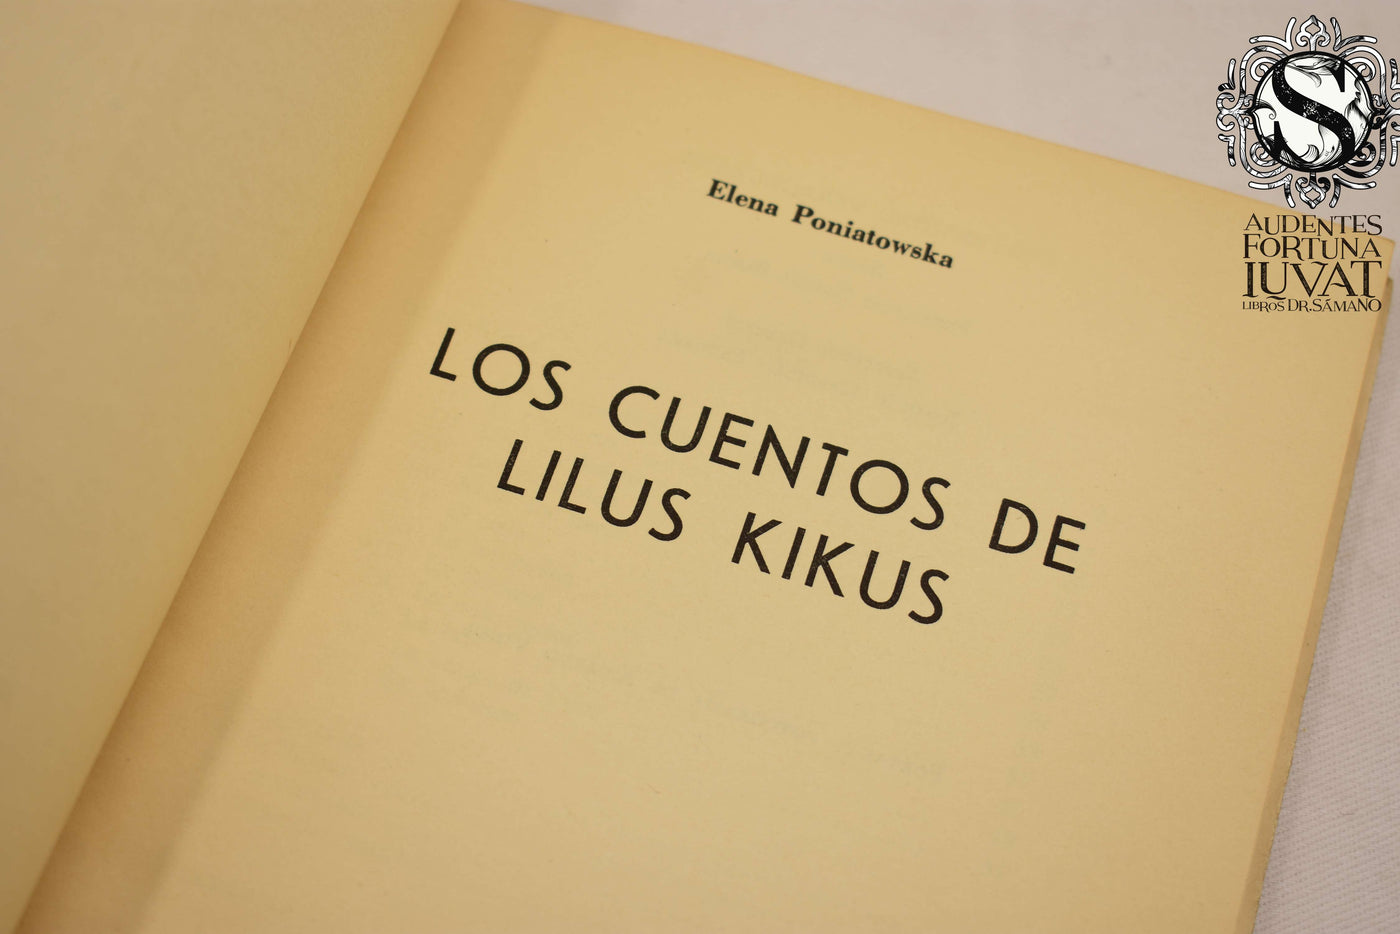 Los cuentos de Lilus Kikus - ELENA PONIATOWSKA